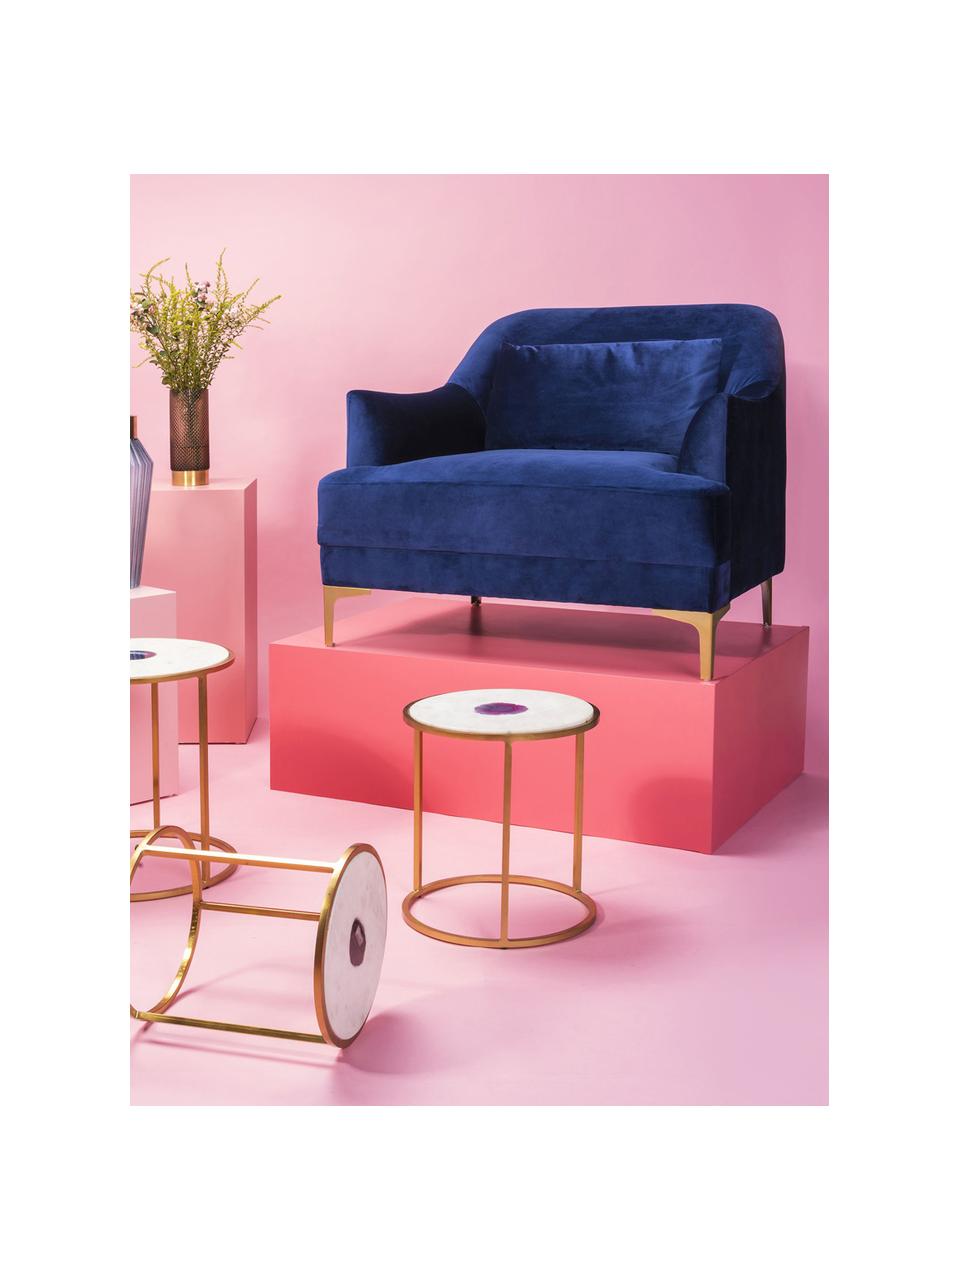 Fluwelen fauteuil Proud, Bekleding: polyester (fluweel), Poten: gelakt metaal, Fluweel blauw, B 98 x D 86 cm